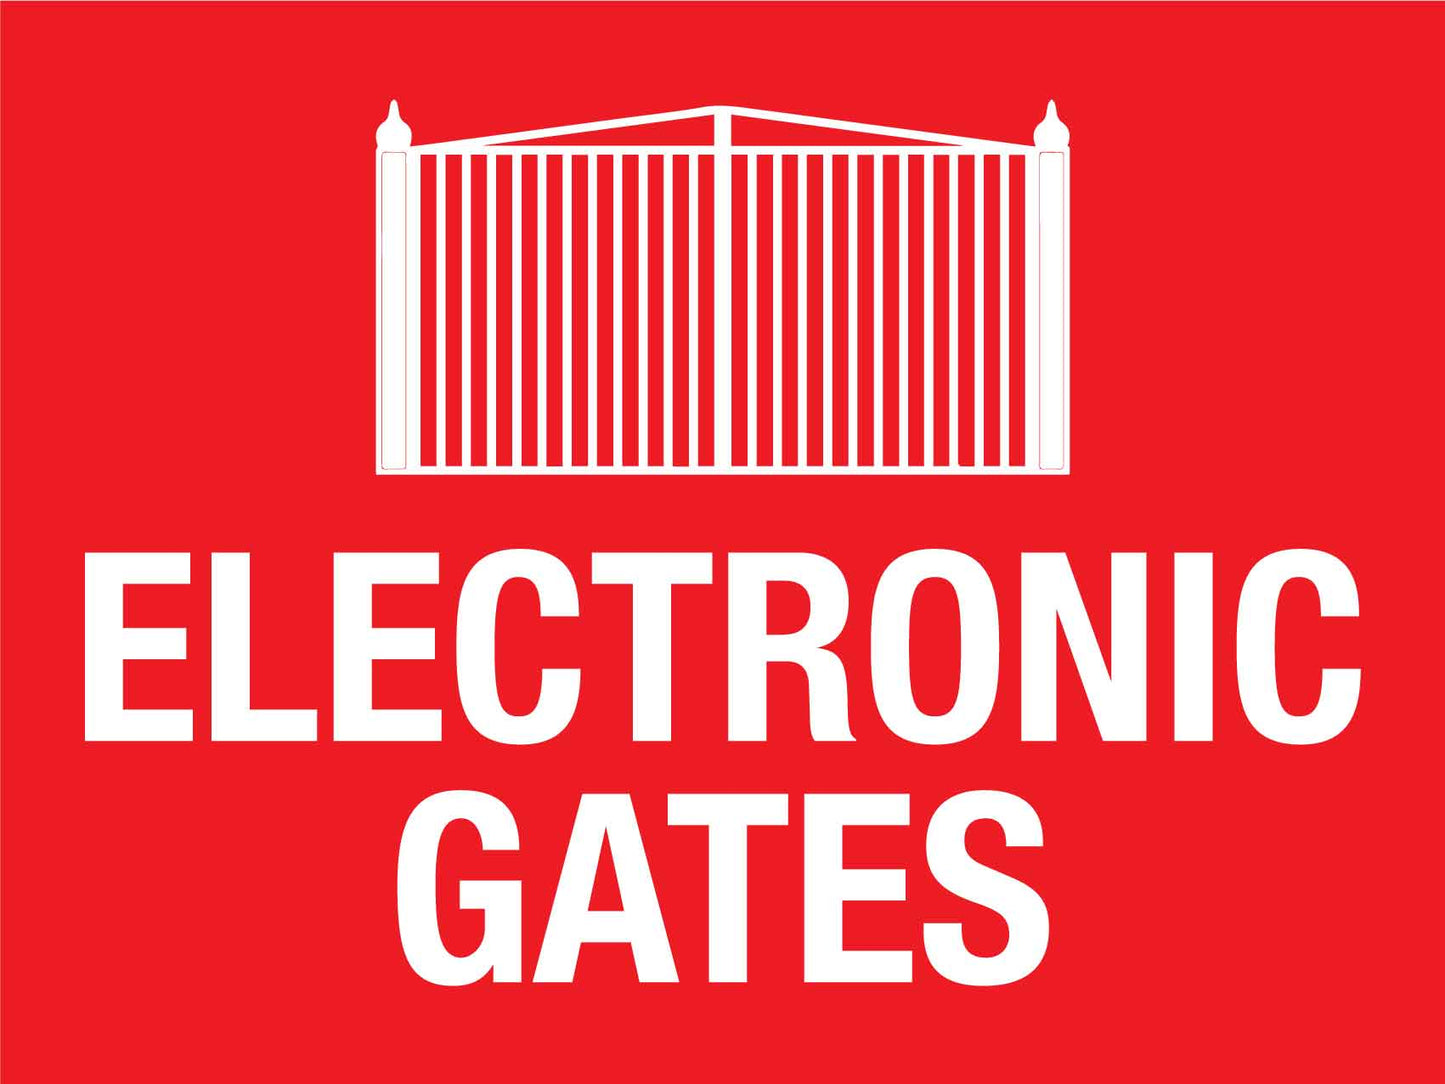 Electronic Gates Sign